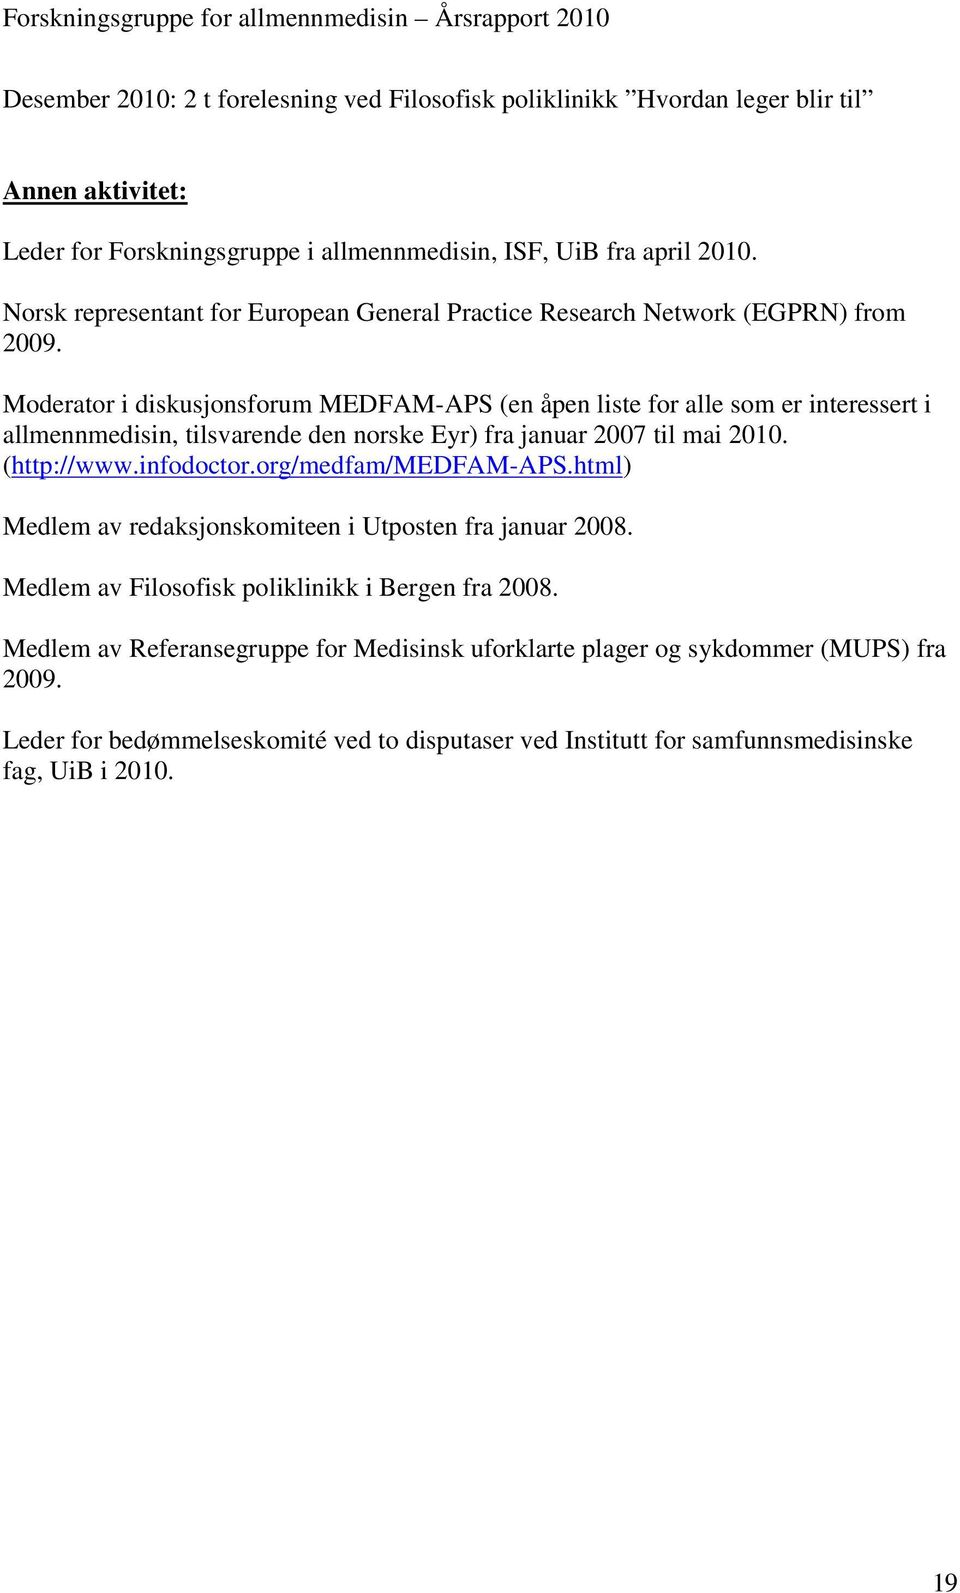 Moderator i diskusjonsforum MEDFAM-APS (en åpen liste for alle som er interessert i allmennmedisin, tilsvarende den norske Eyr) fra januar 2007 til mai 2010. (http://www.infodoctor.